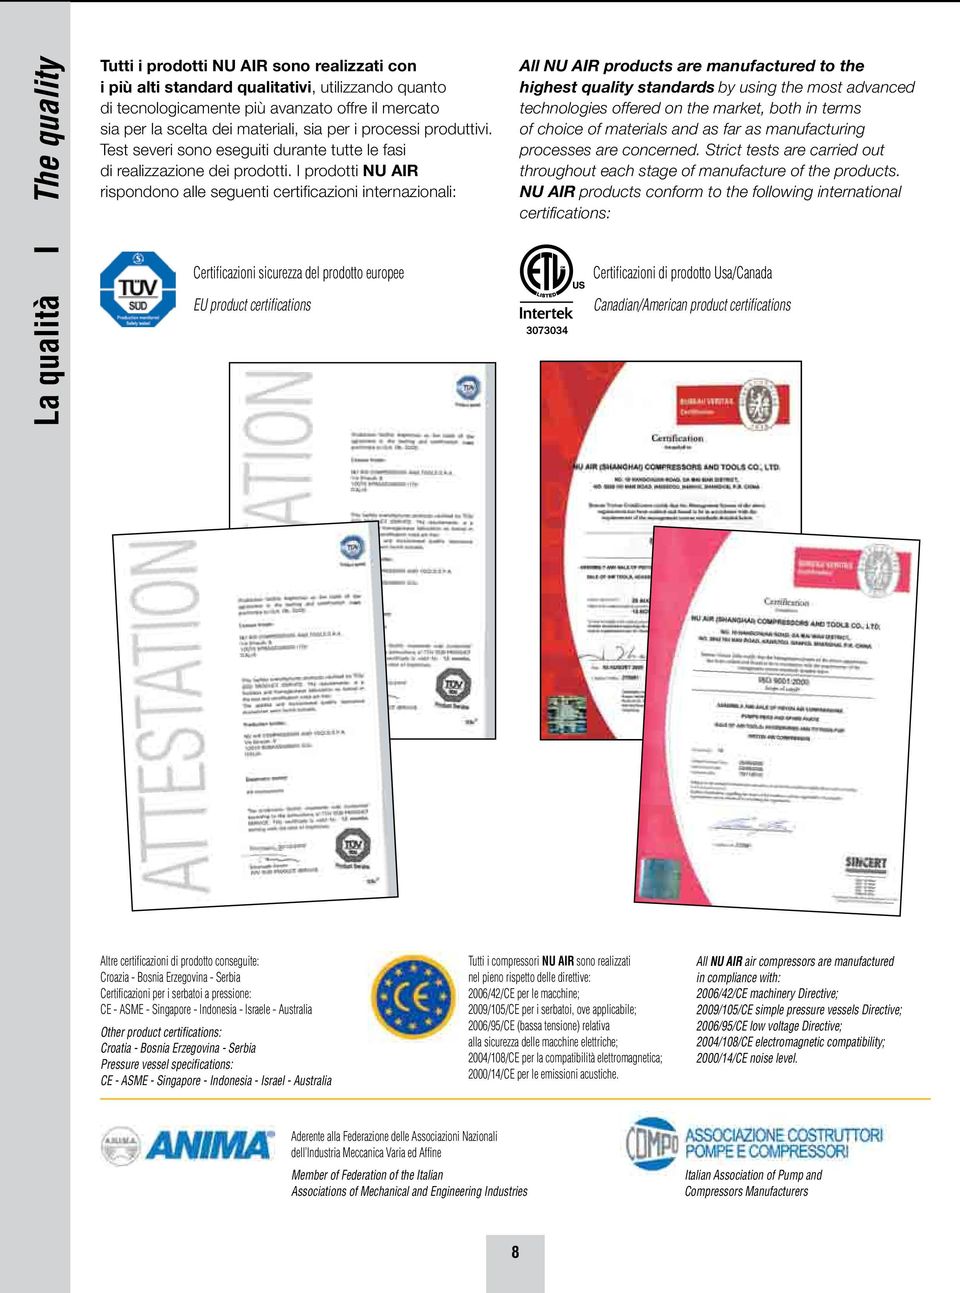 I prodotti NU AIR rispondono alle seguenti certificazioni internazionali: Certificazioni sicurezza del prodotto europee EU product certifications All NU AIR products are manufactured to the highest